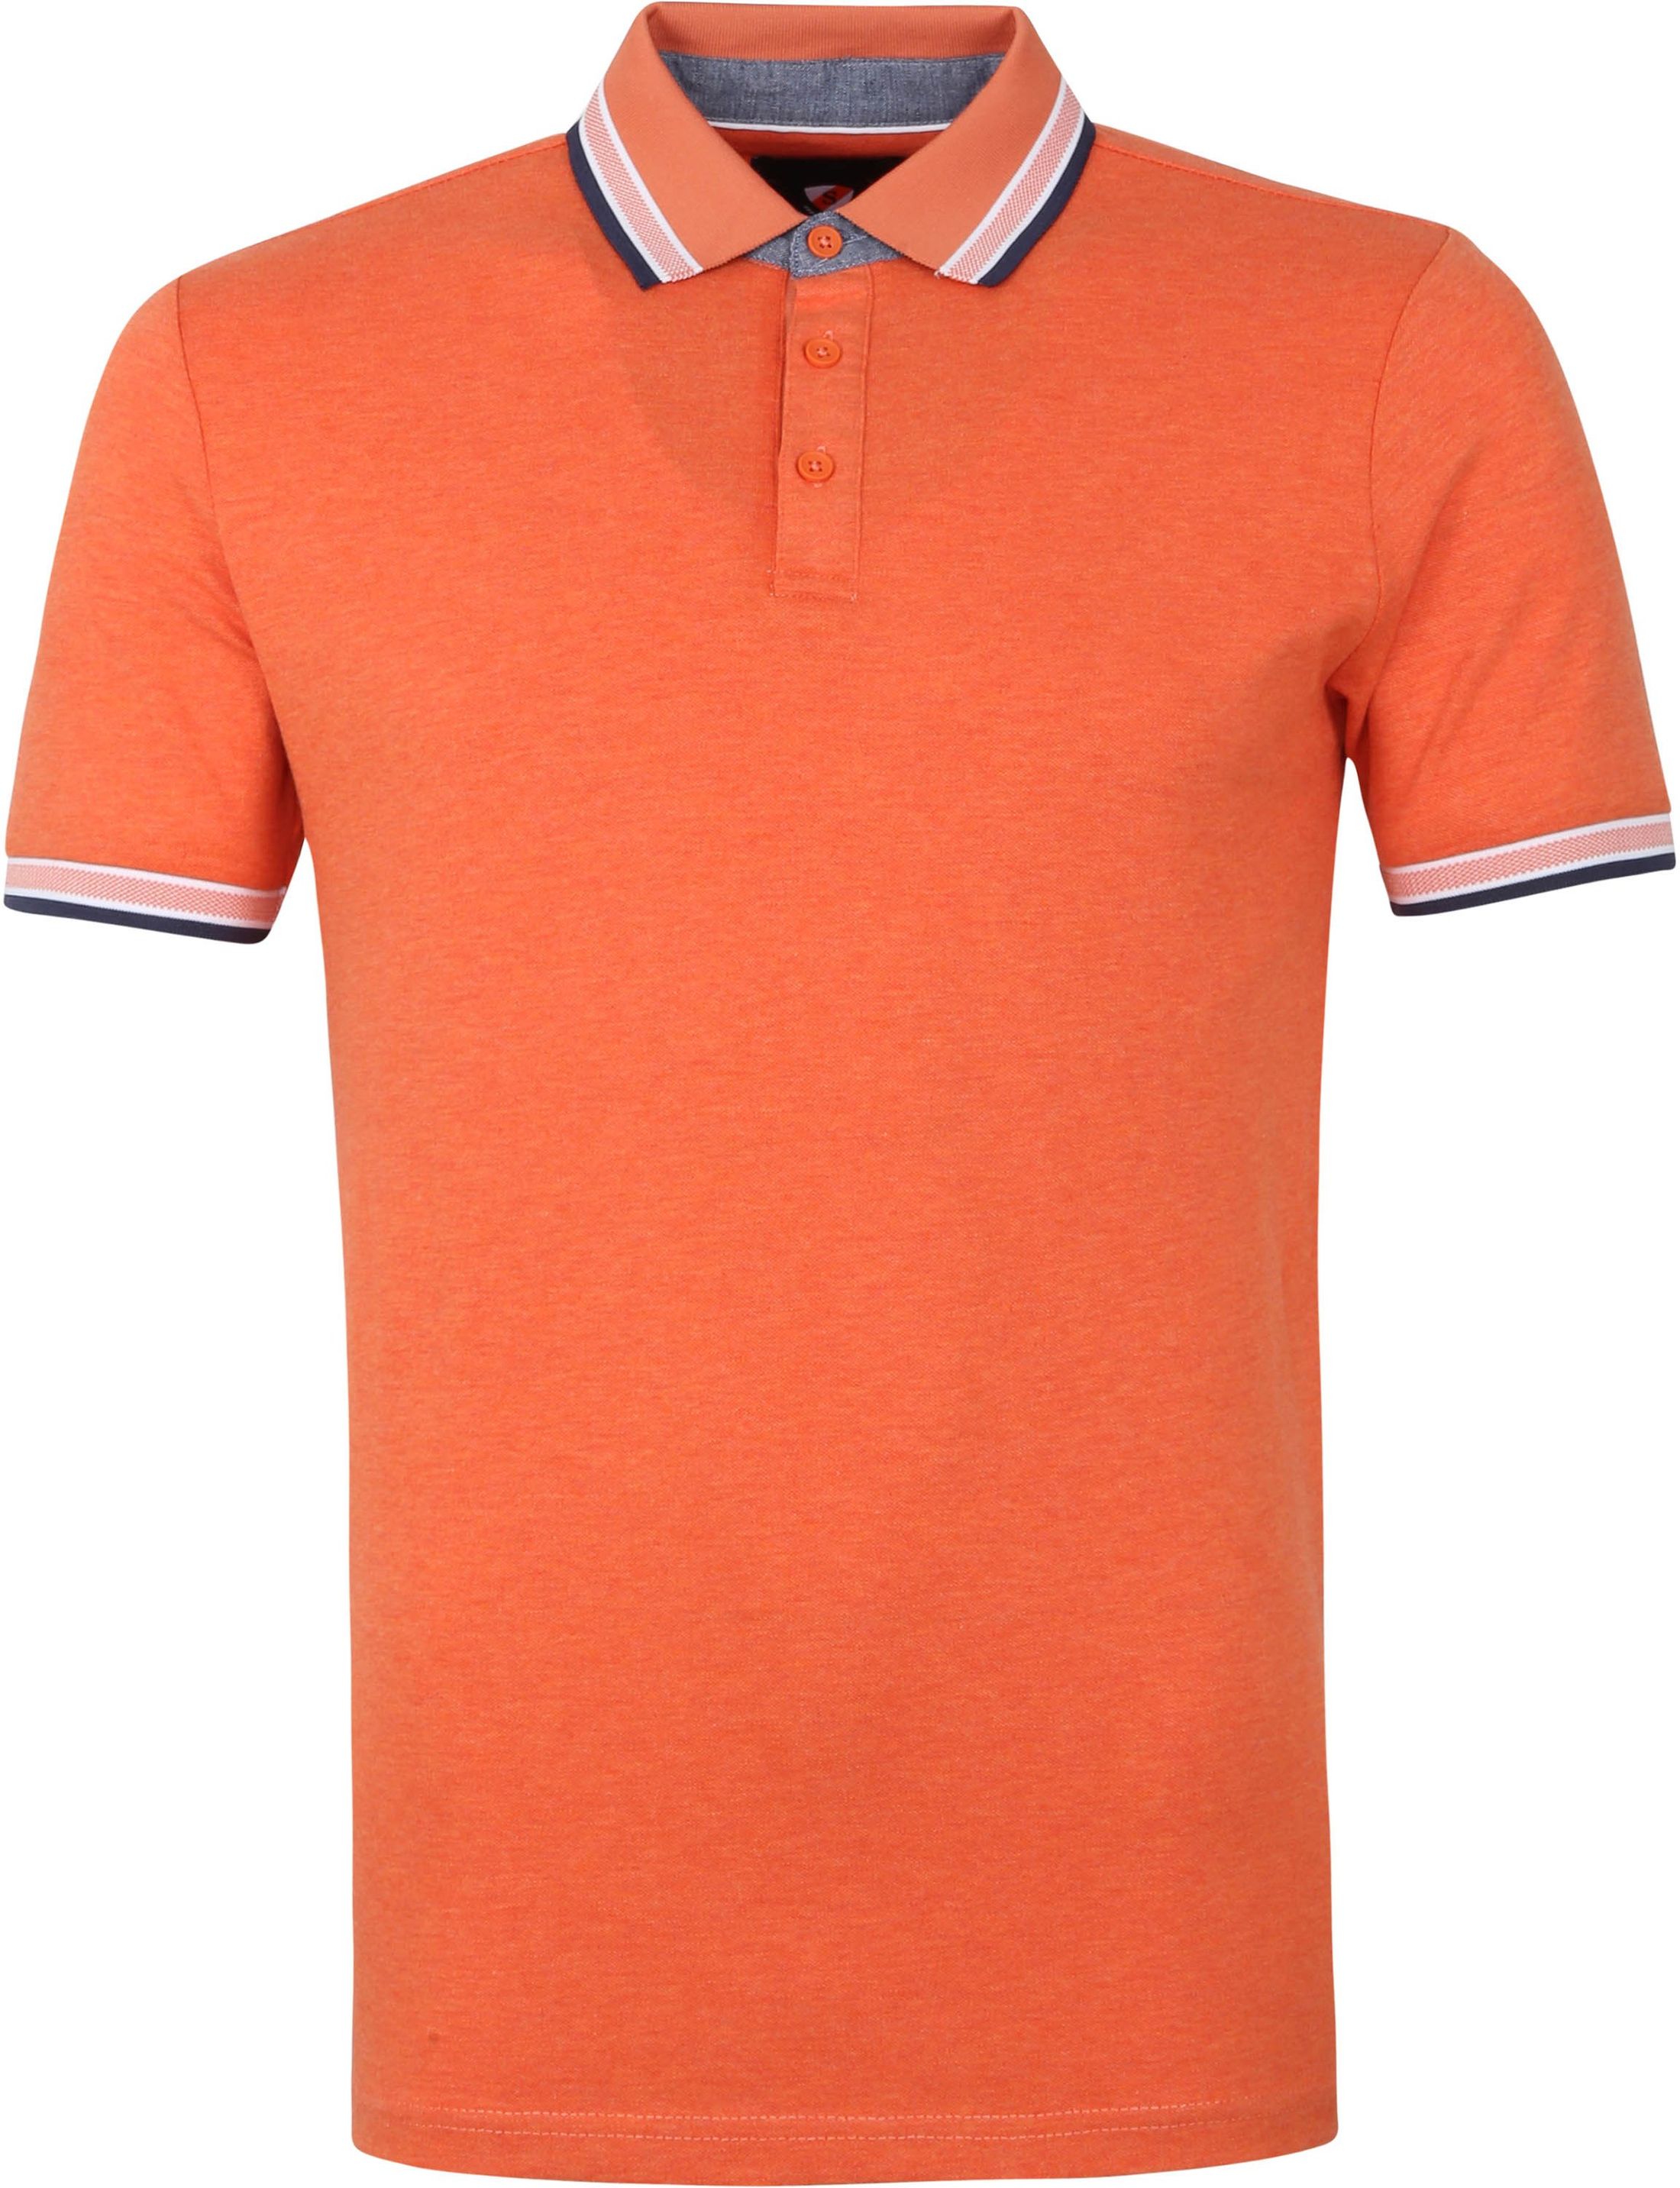 Suitable Brick Polo Shirt Orange size M